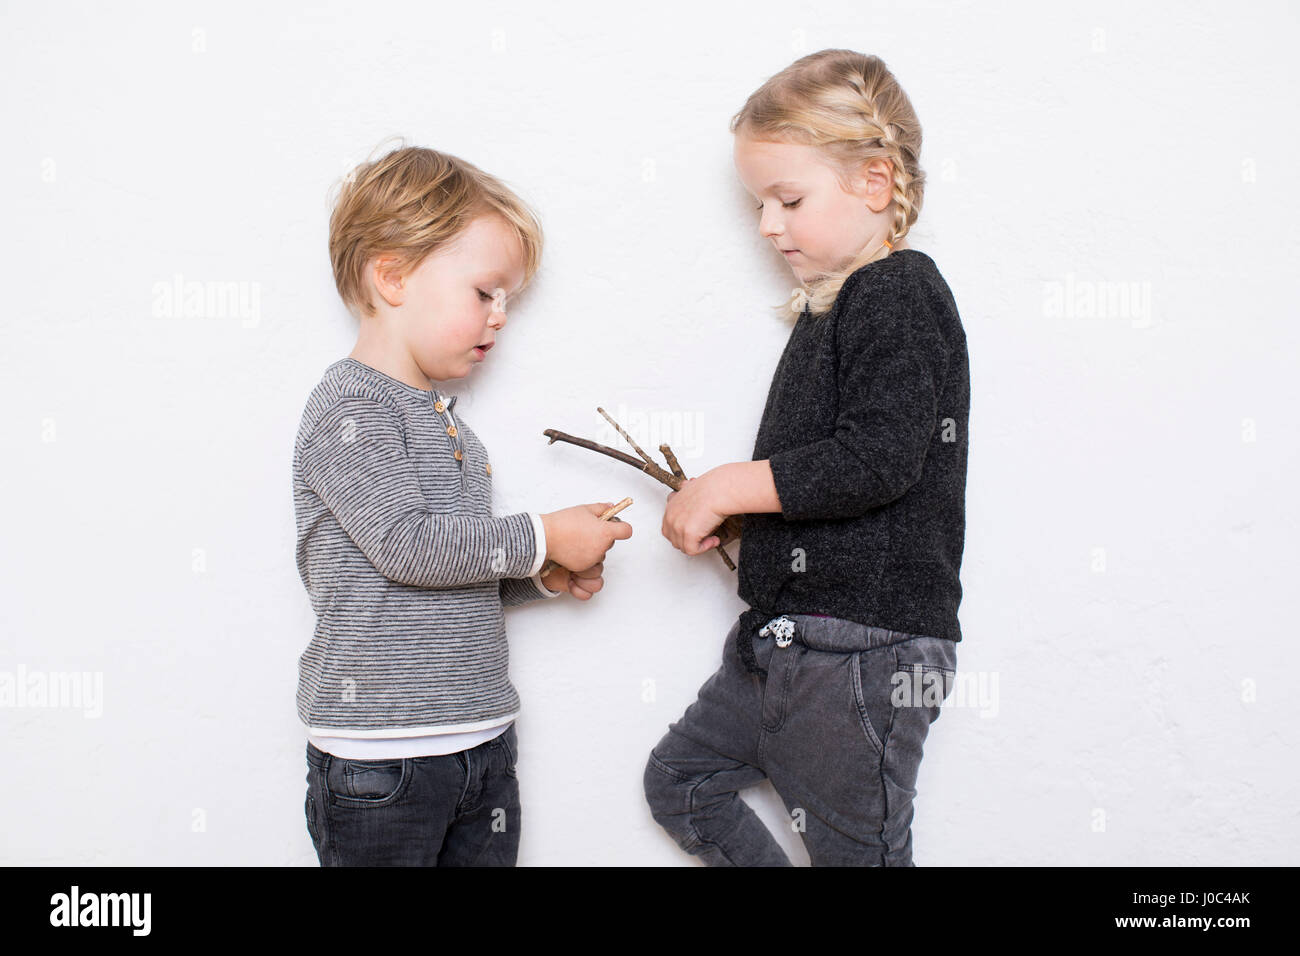 Jeune fille et garçon appuyé contre un fond blanc, girl holding brindilles Banque D'Images